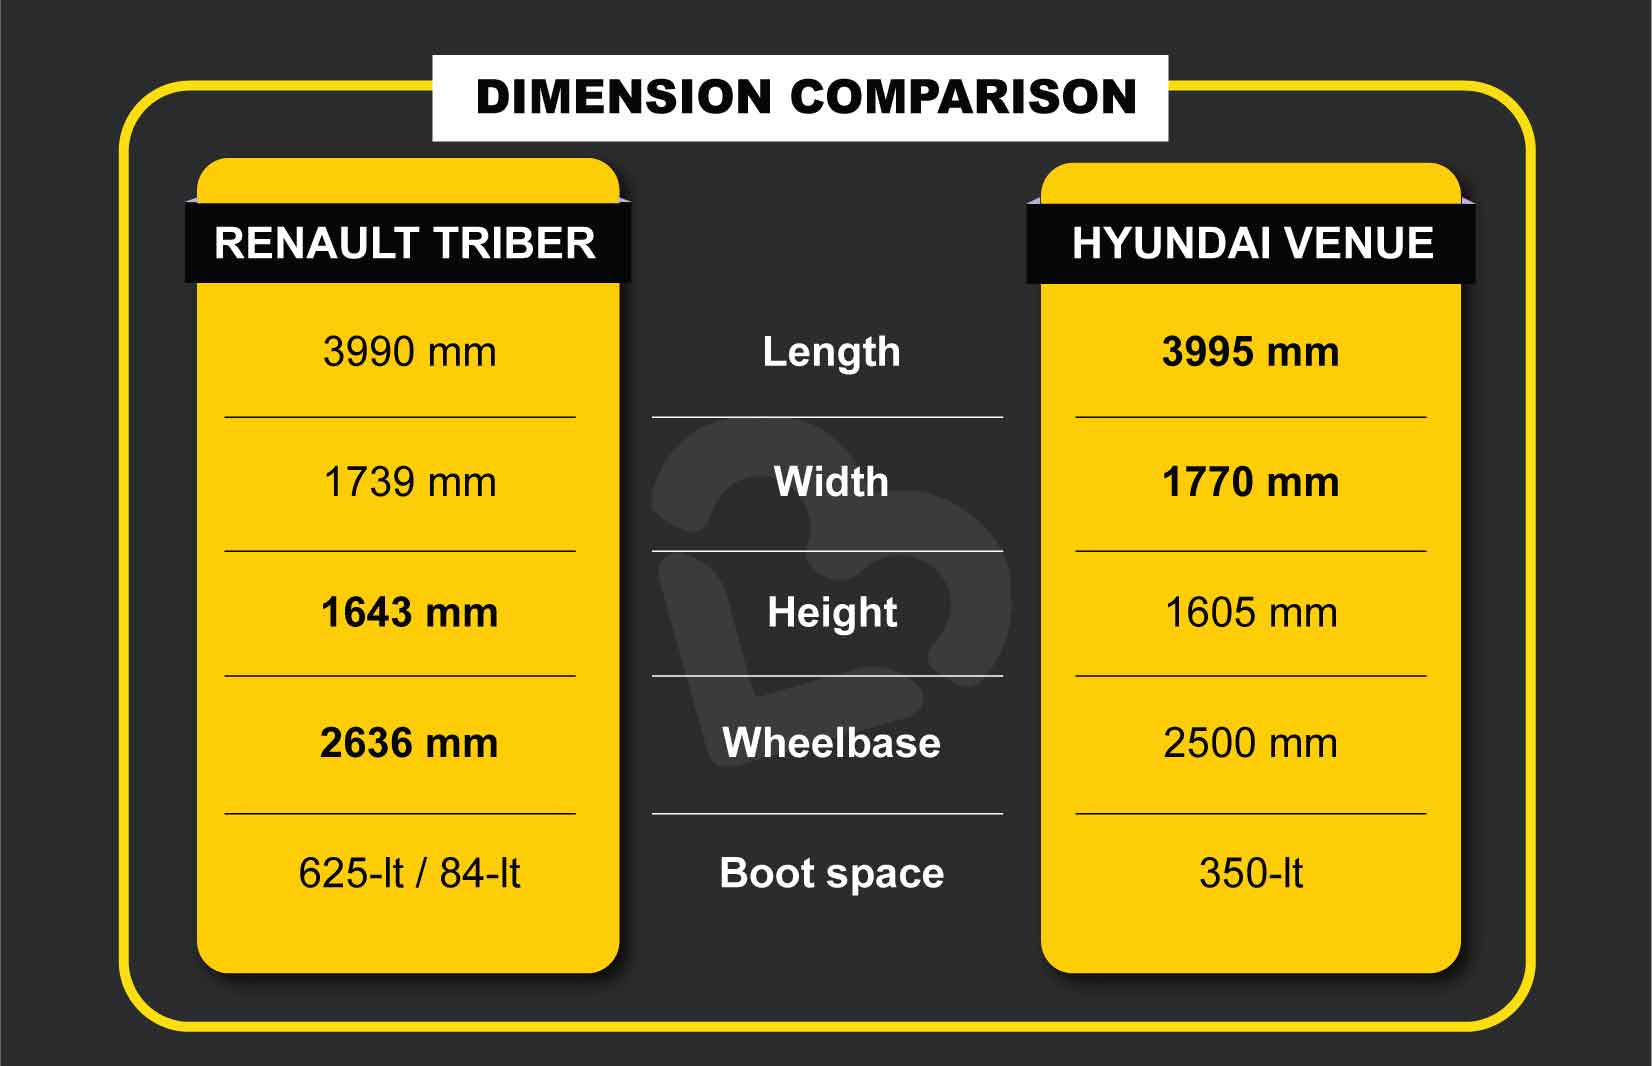 Triber vs Venue Dimension Comparison